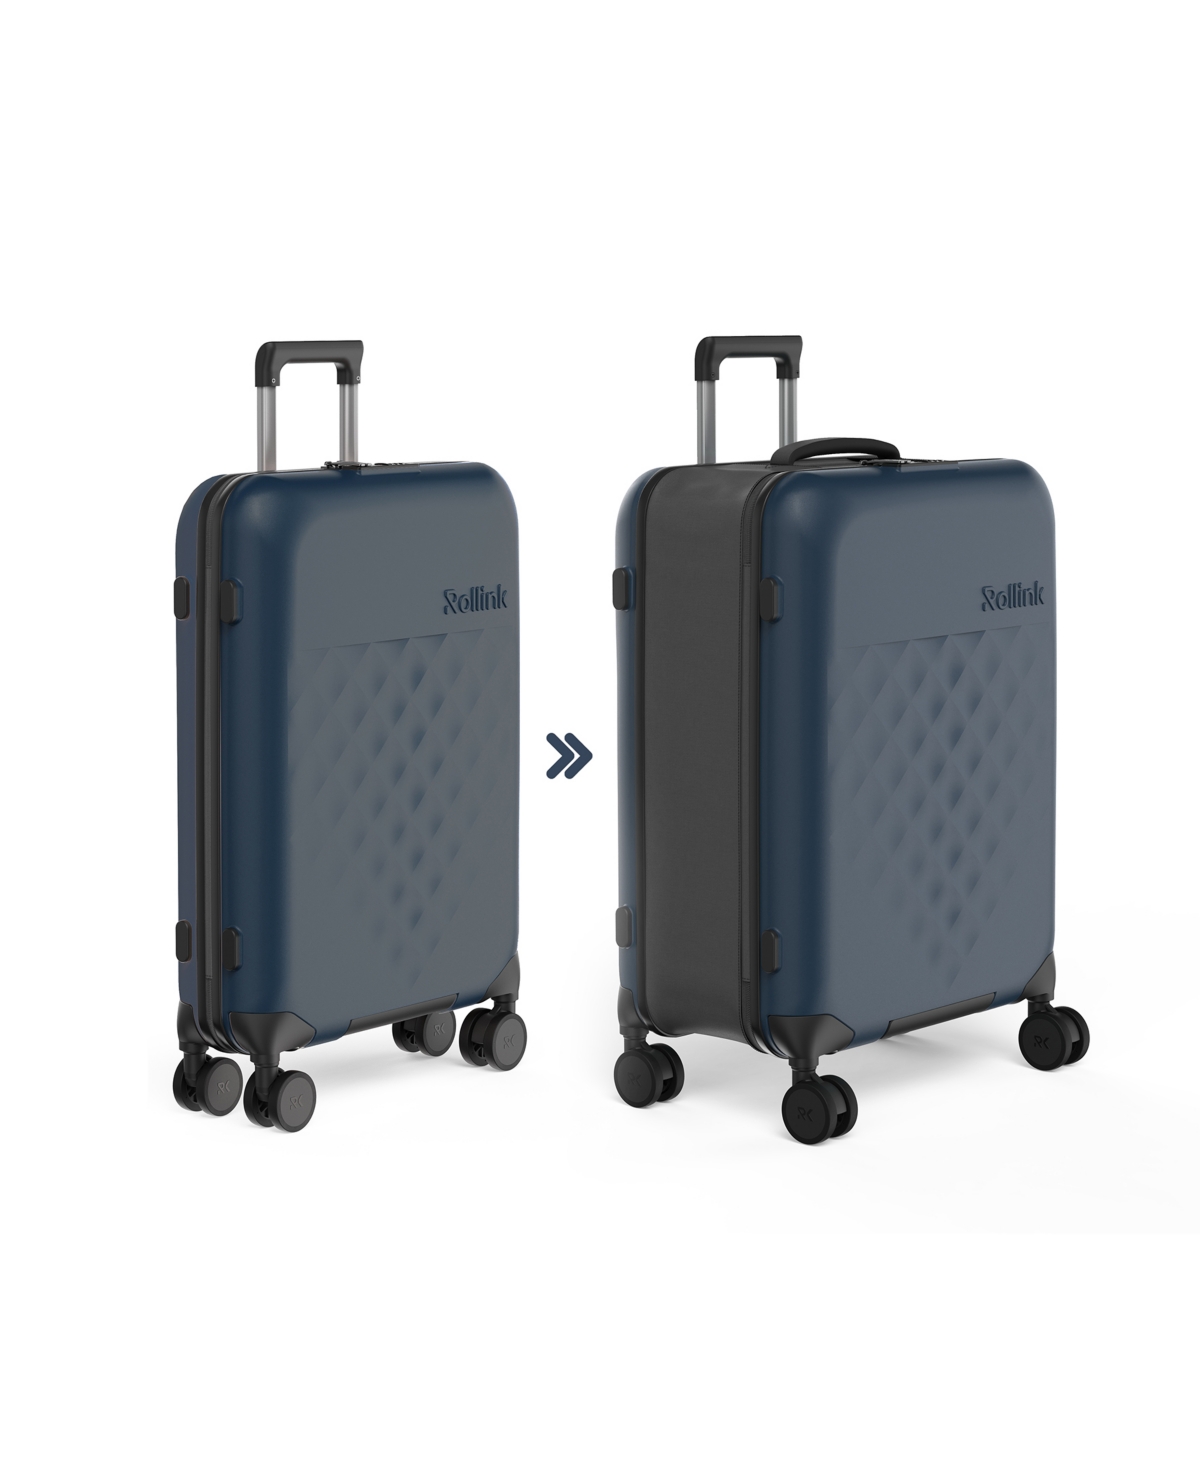 Rollink Flex 360 Spinner 26" Medium Check-in Suitcase In Dark Blue